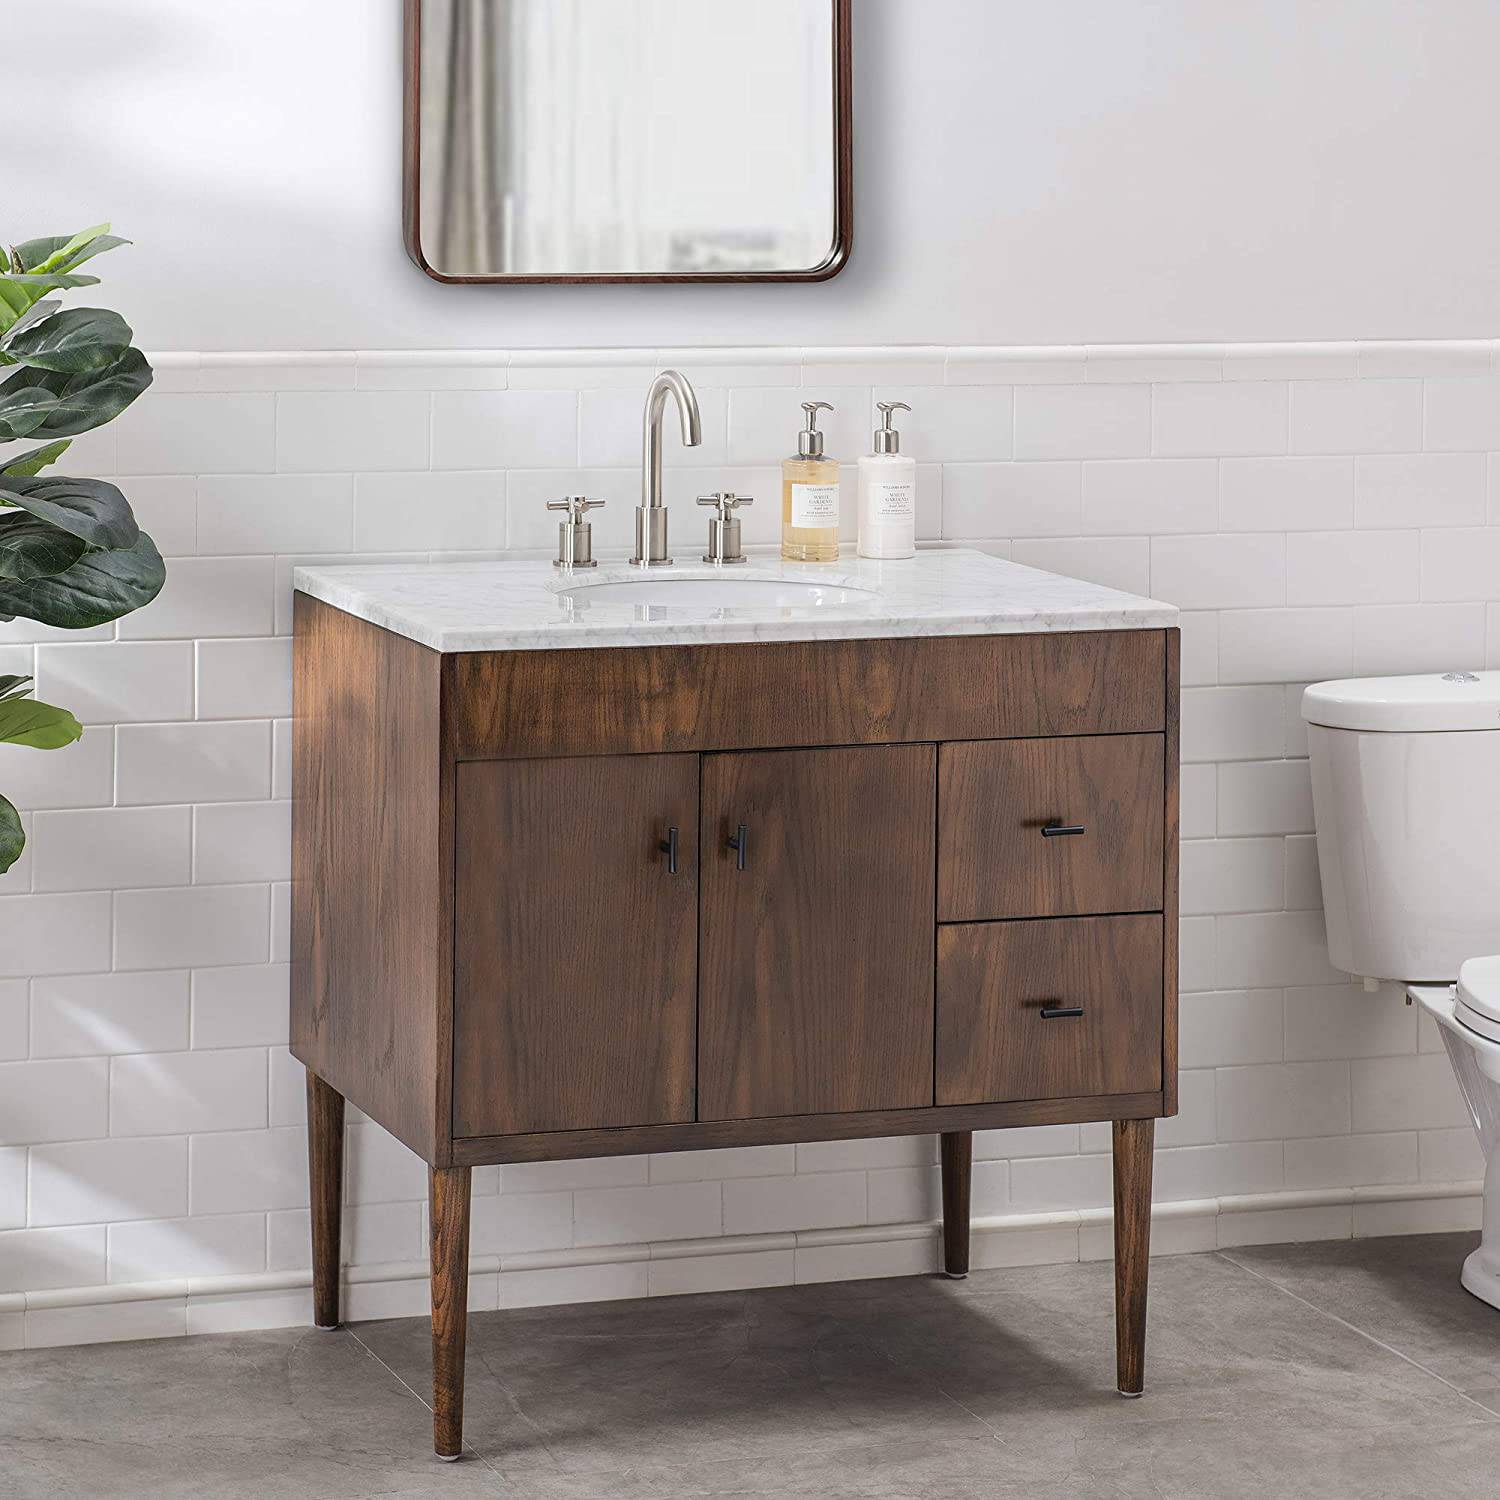 Sunjoy 36 in. Modern Style Single Sink Bathroom Vanity with Top, Brown